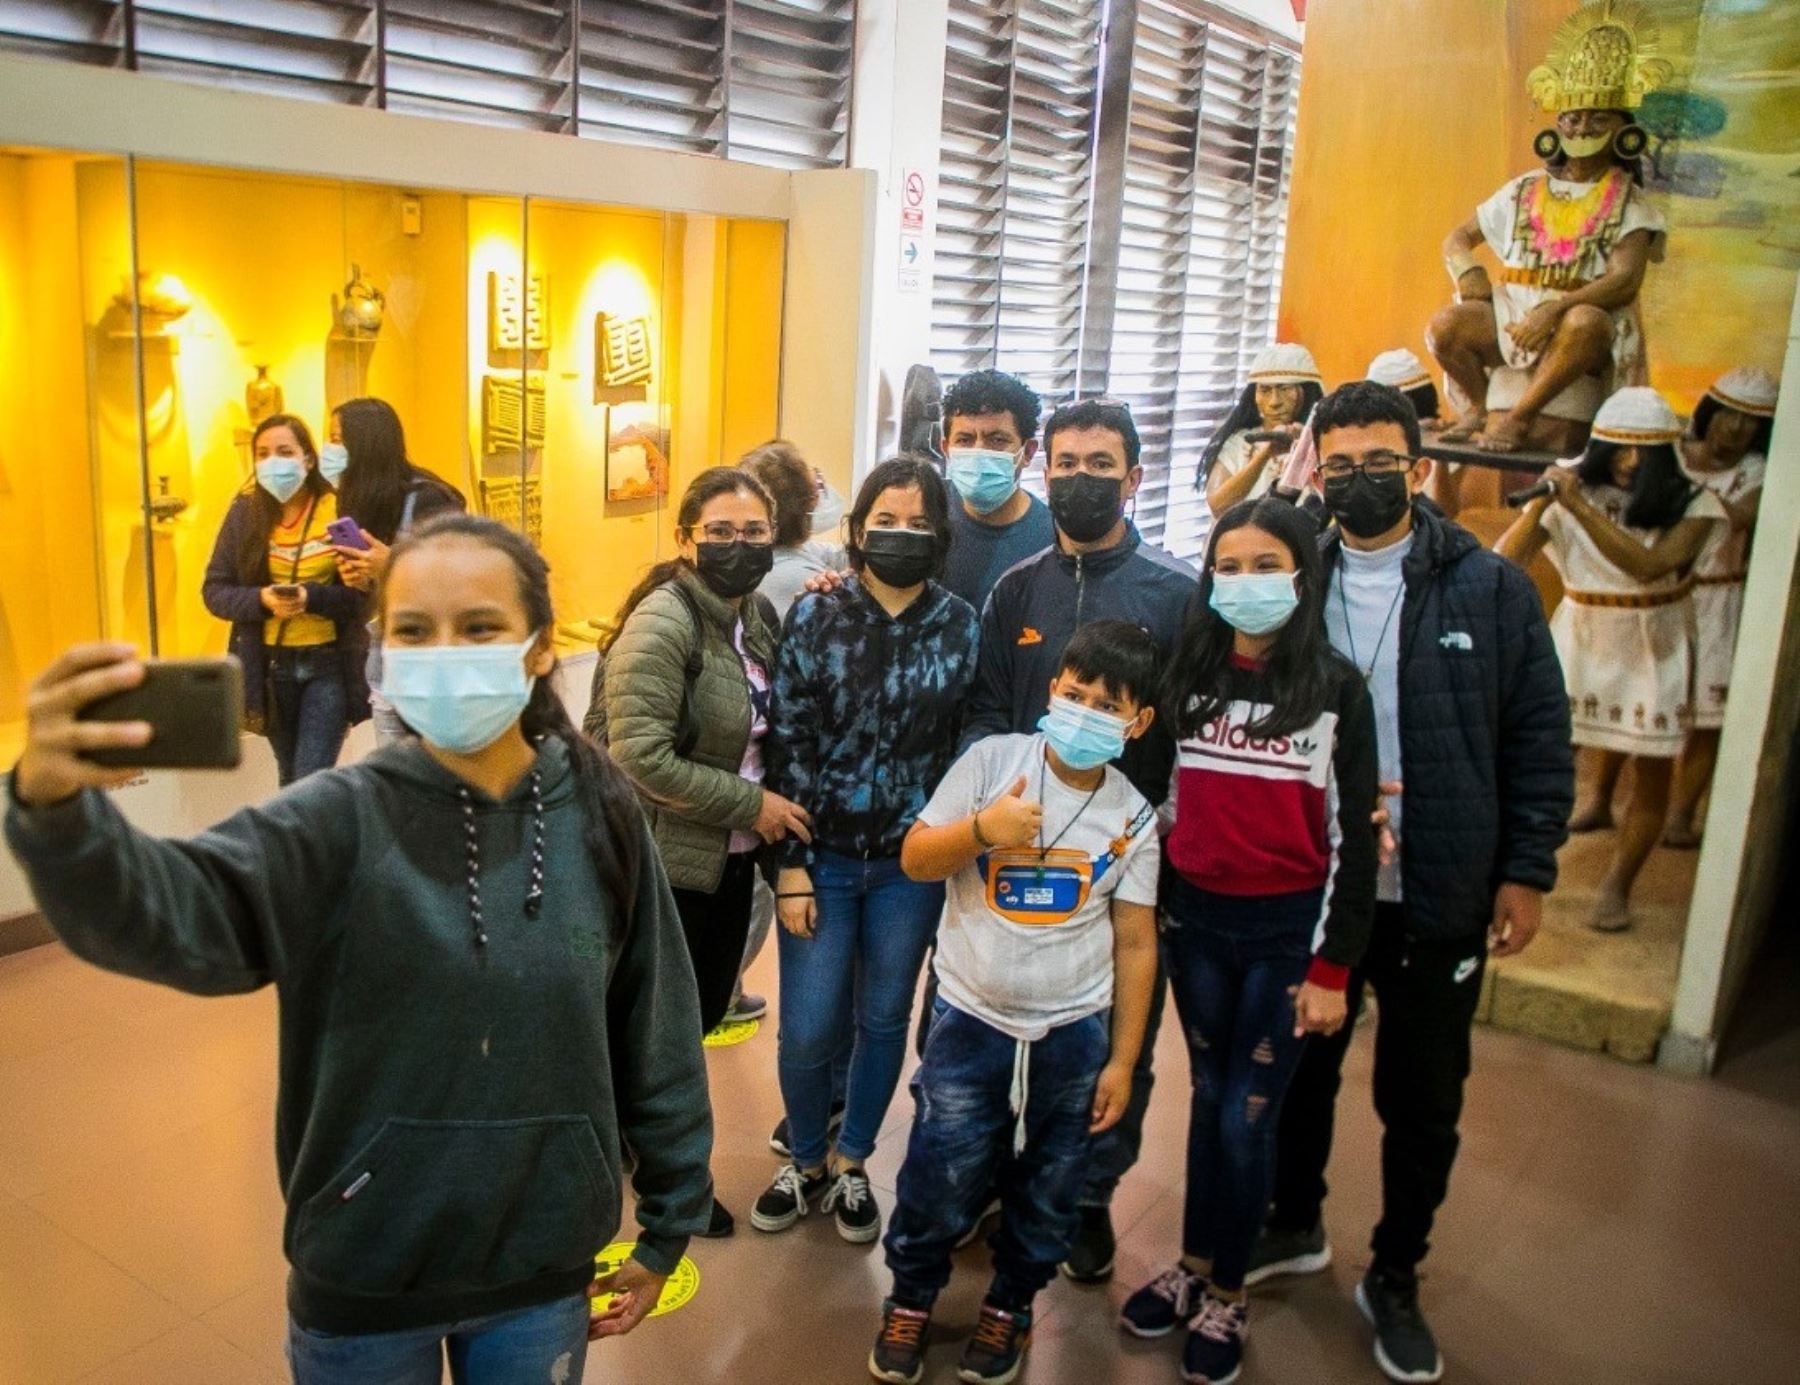 El turismo se reactiva en La Libertad. Más de 1,300 personas visitaron el museo de sitio del complejo arqueológico Chan Chan, ubicado en Trujillo, el primer domingo de agosto. ​ANDINA/Difusión